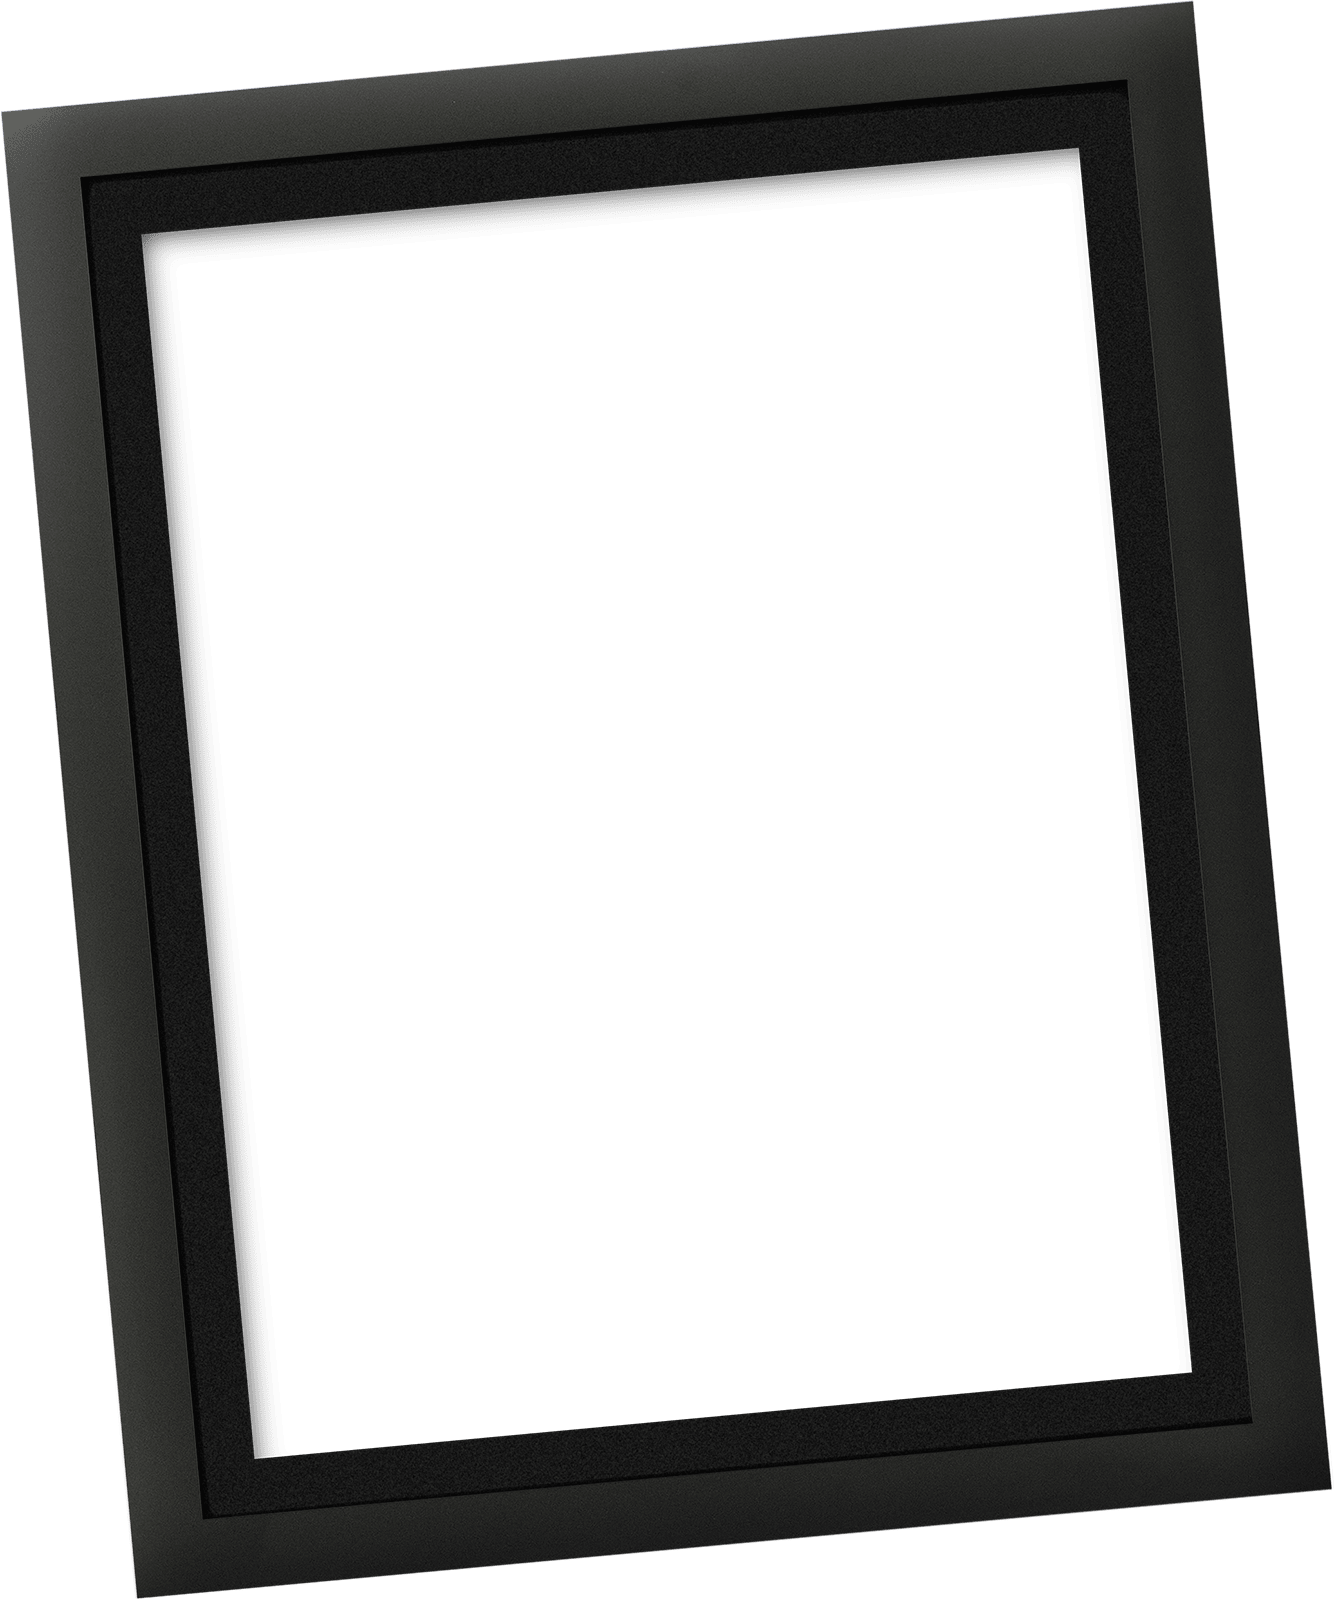 Black Color Frame PNG Image - HD Transparent Frame PNG Free